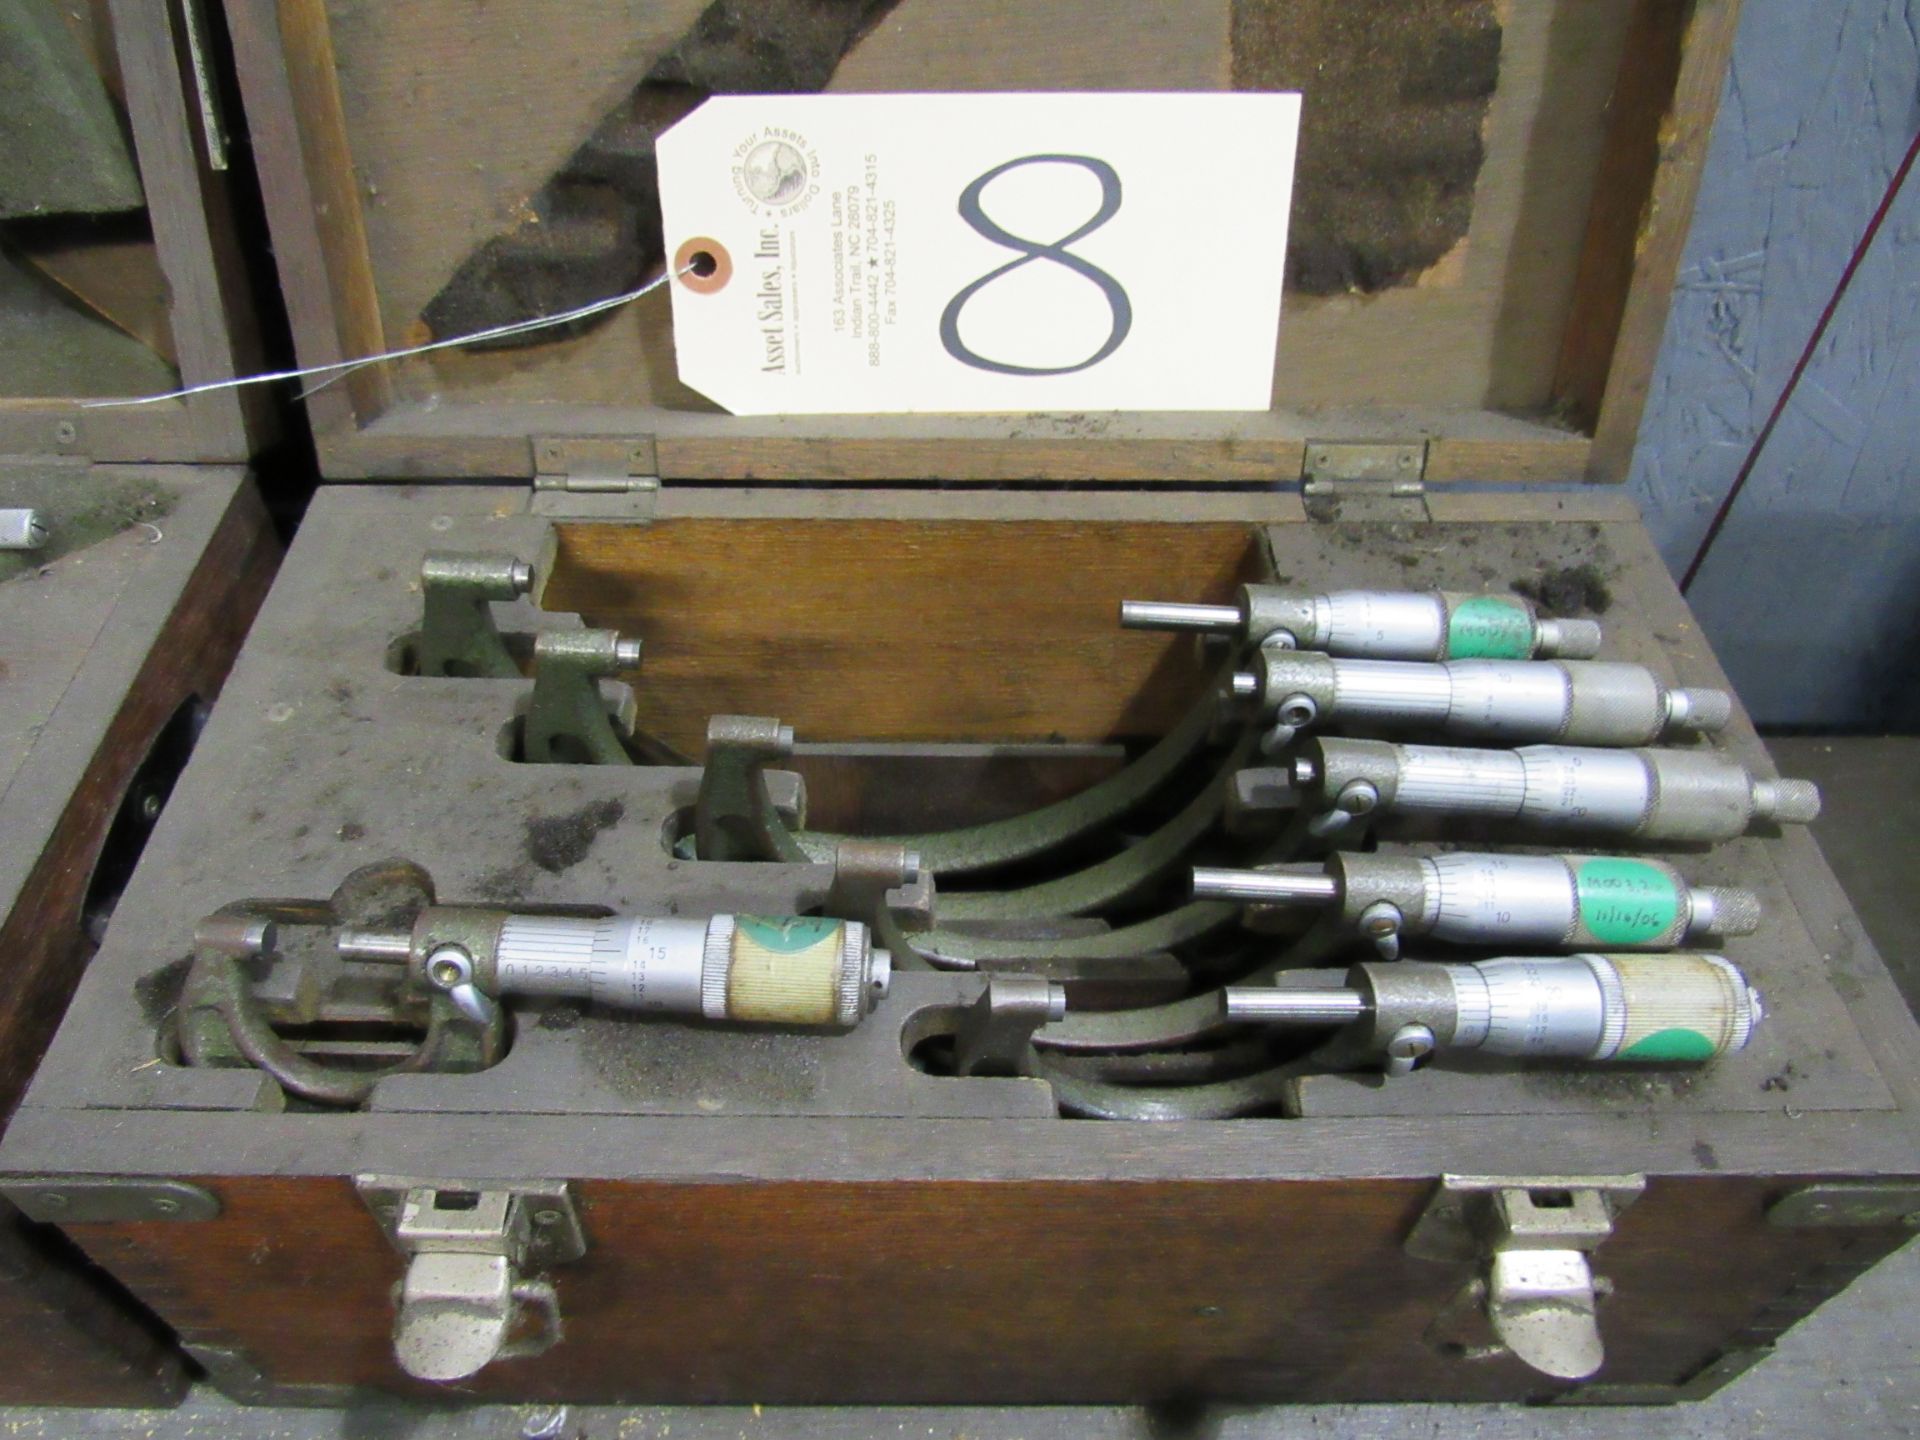 0-6'' Micrometer Set